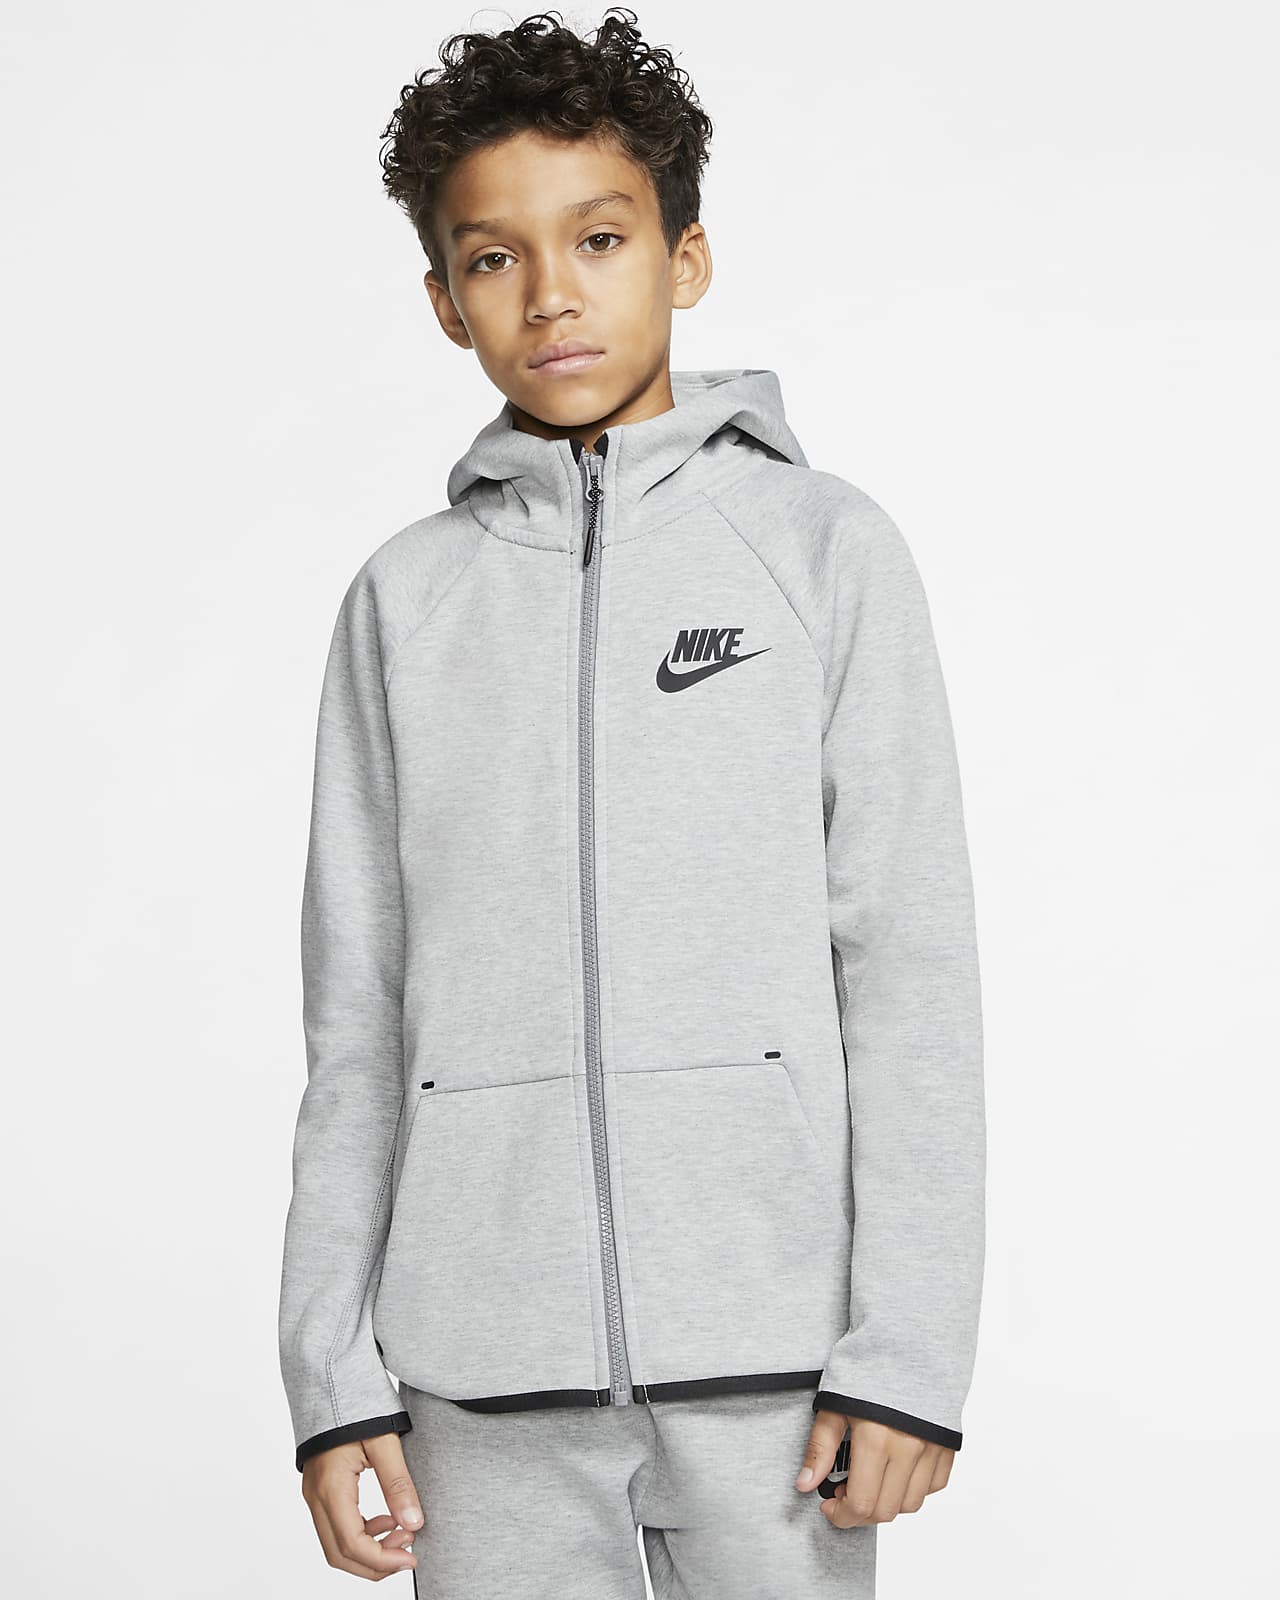 Nike Sportswear Tech Fleece Kids' Full-Zip Jacket. Nike.com